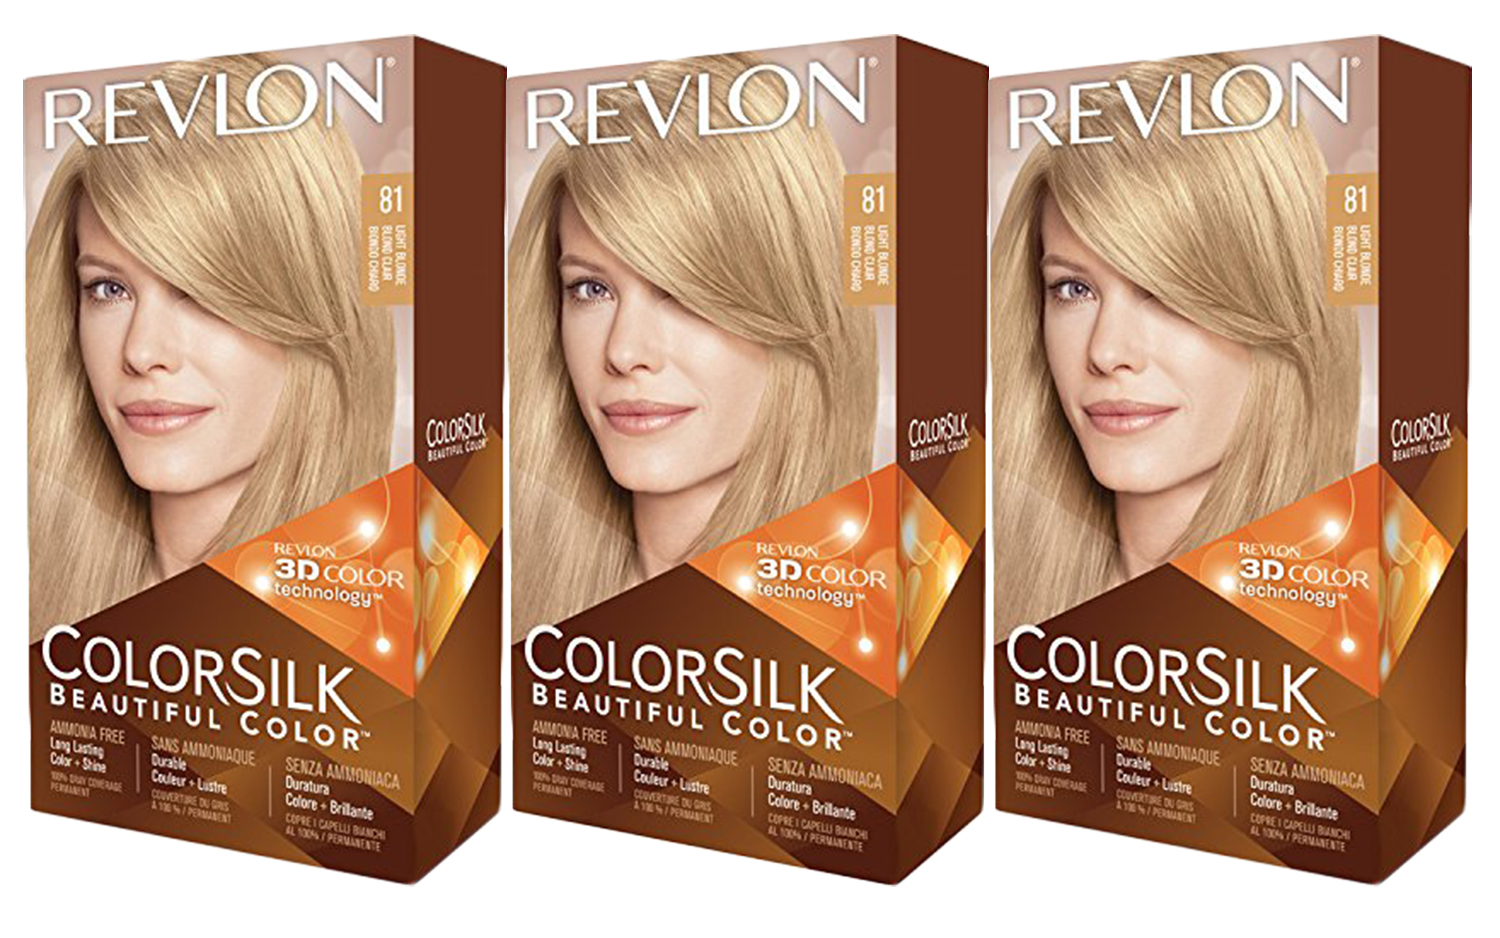 3. "Revlon Colorsilk Beautiful Color, Light Ash Blonde" - wide 10